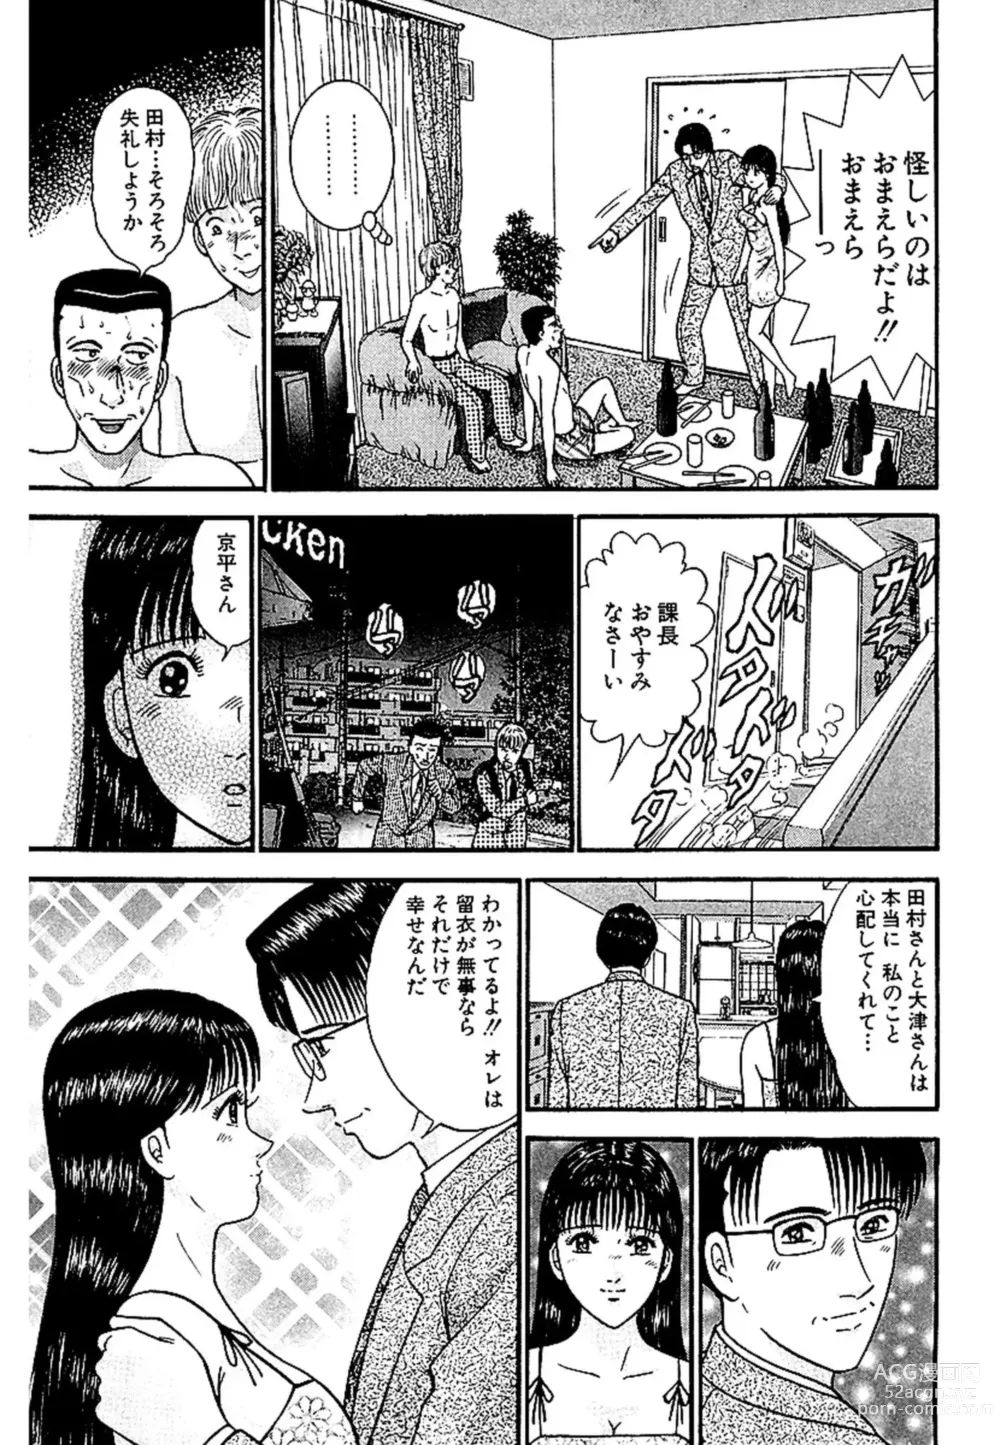 Page 198 of manga Sekkusuresu Shinsō-ban 1